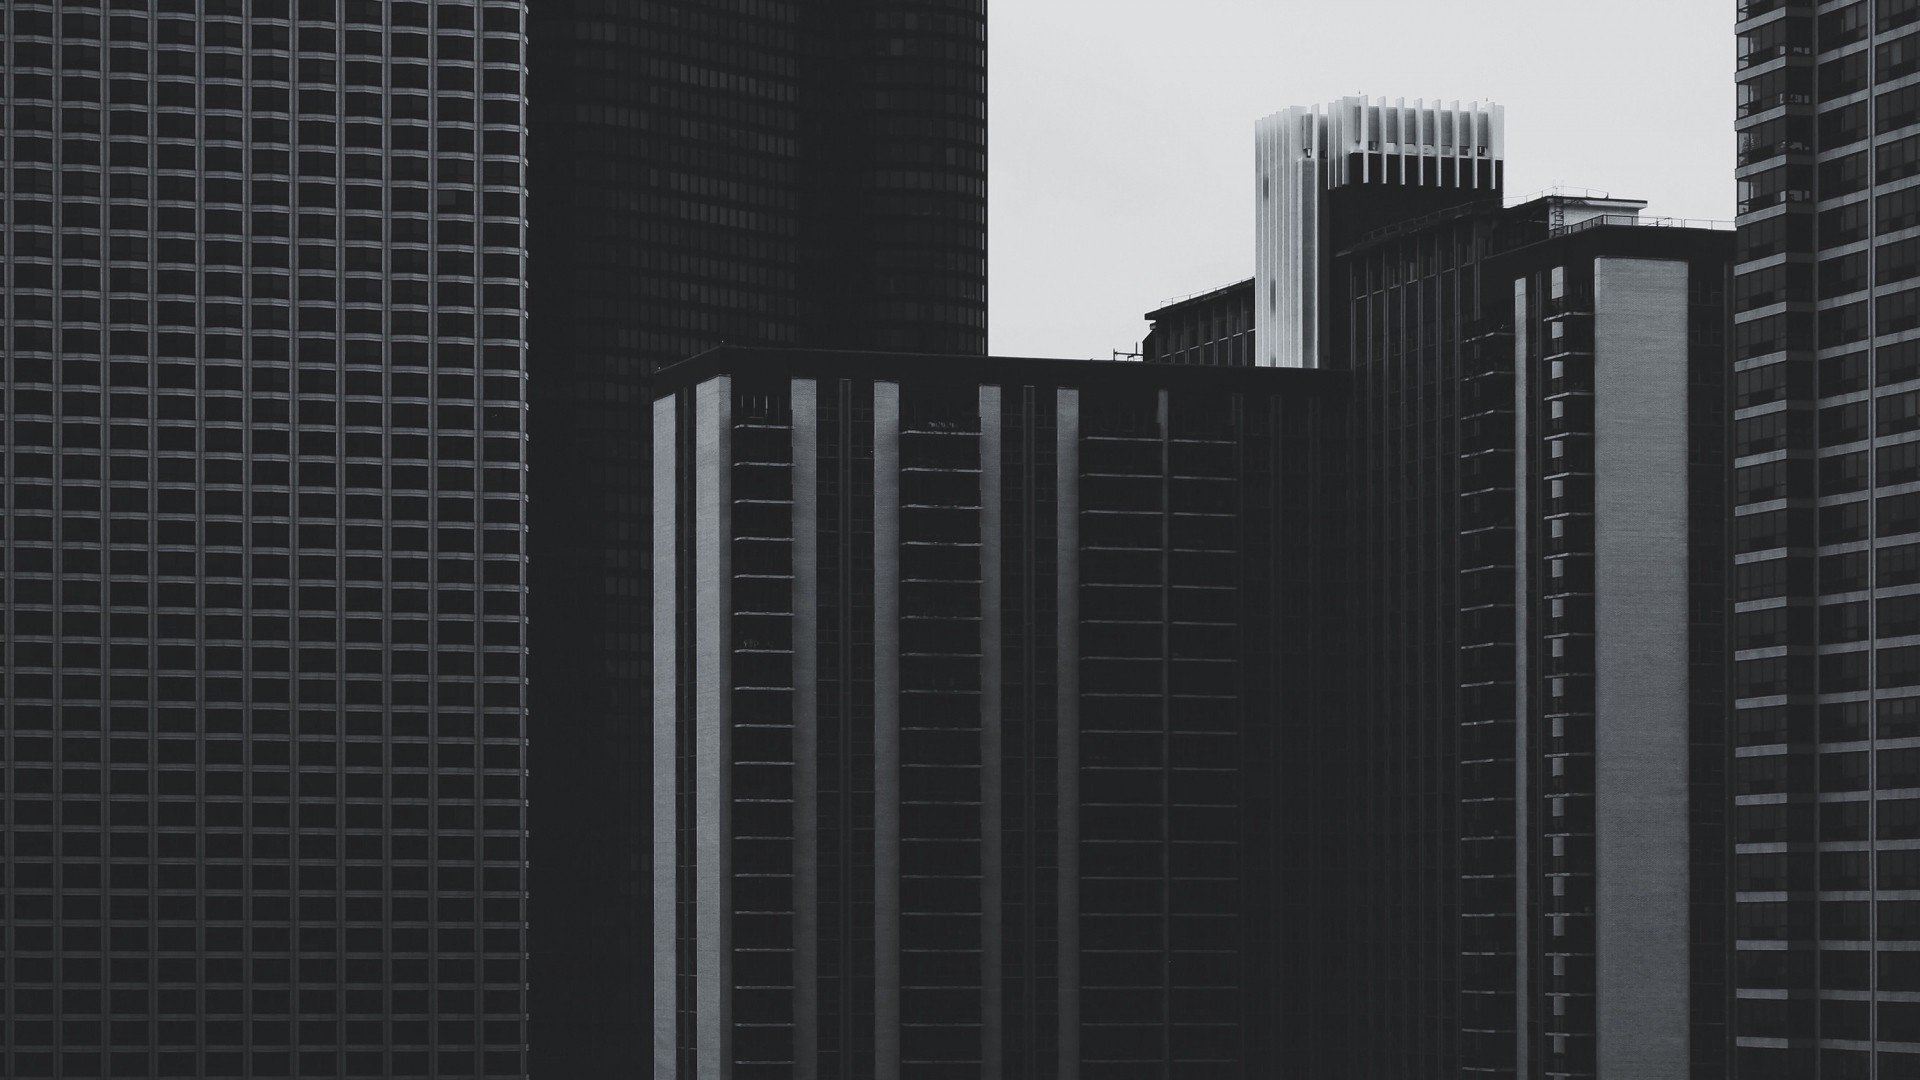 fondo de pantalla de arquitectura minimalista,área metropolitana,rascacielos,bloque de pisos,ciudad,arquitectura